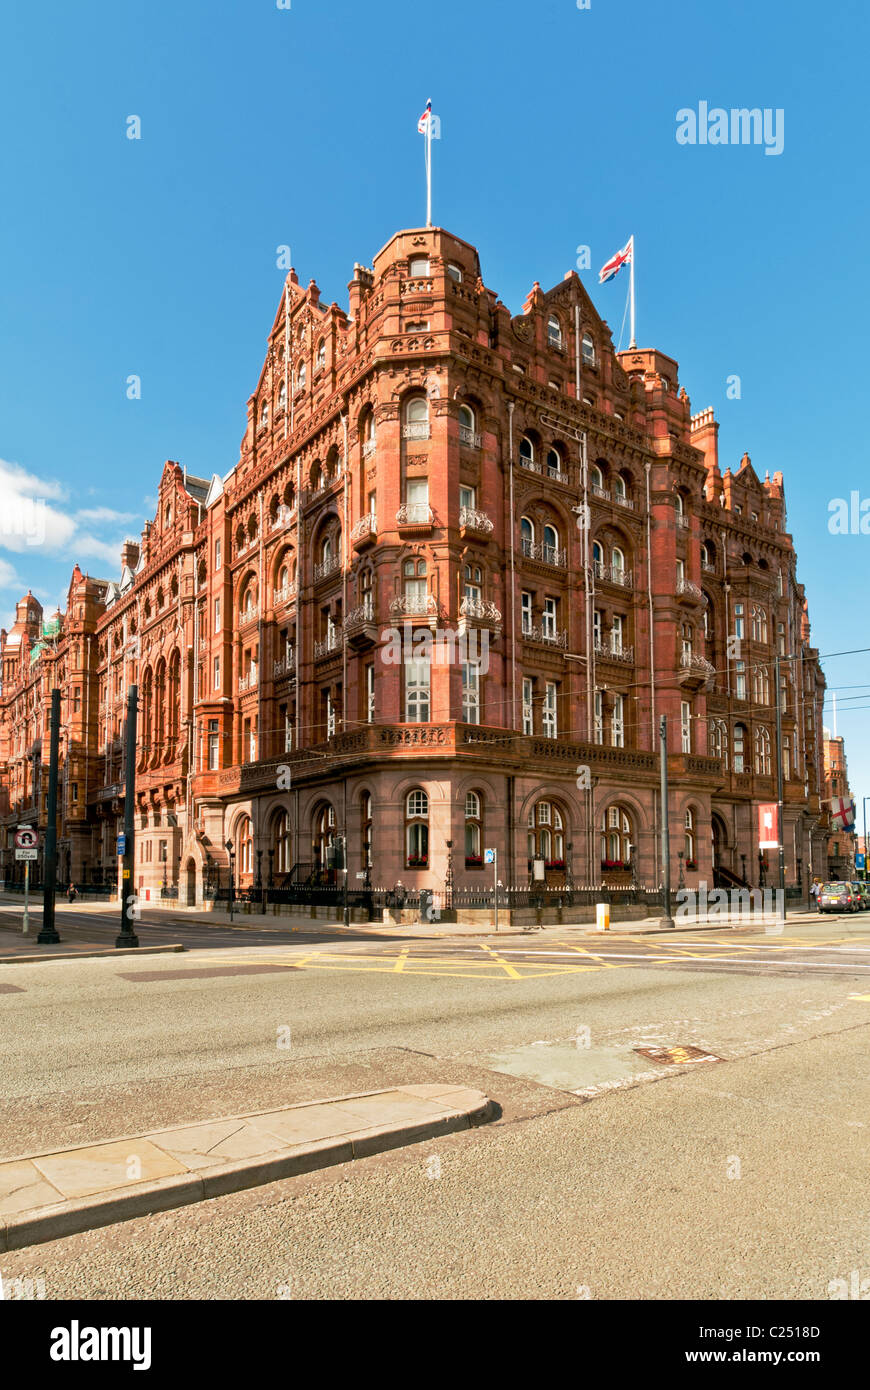 The Midland Hotel, Manchester, England, UK Stock Photo